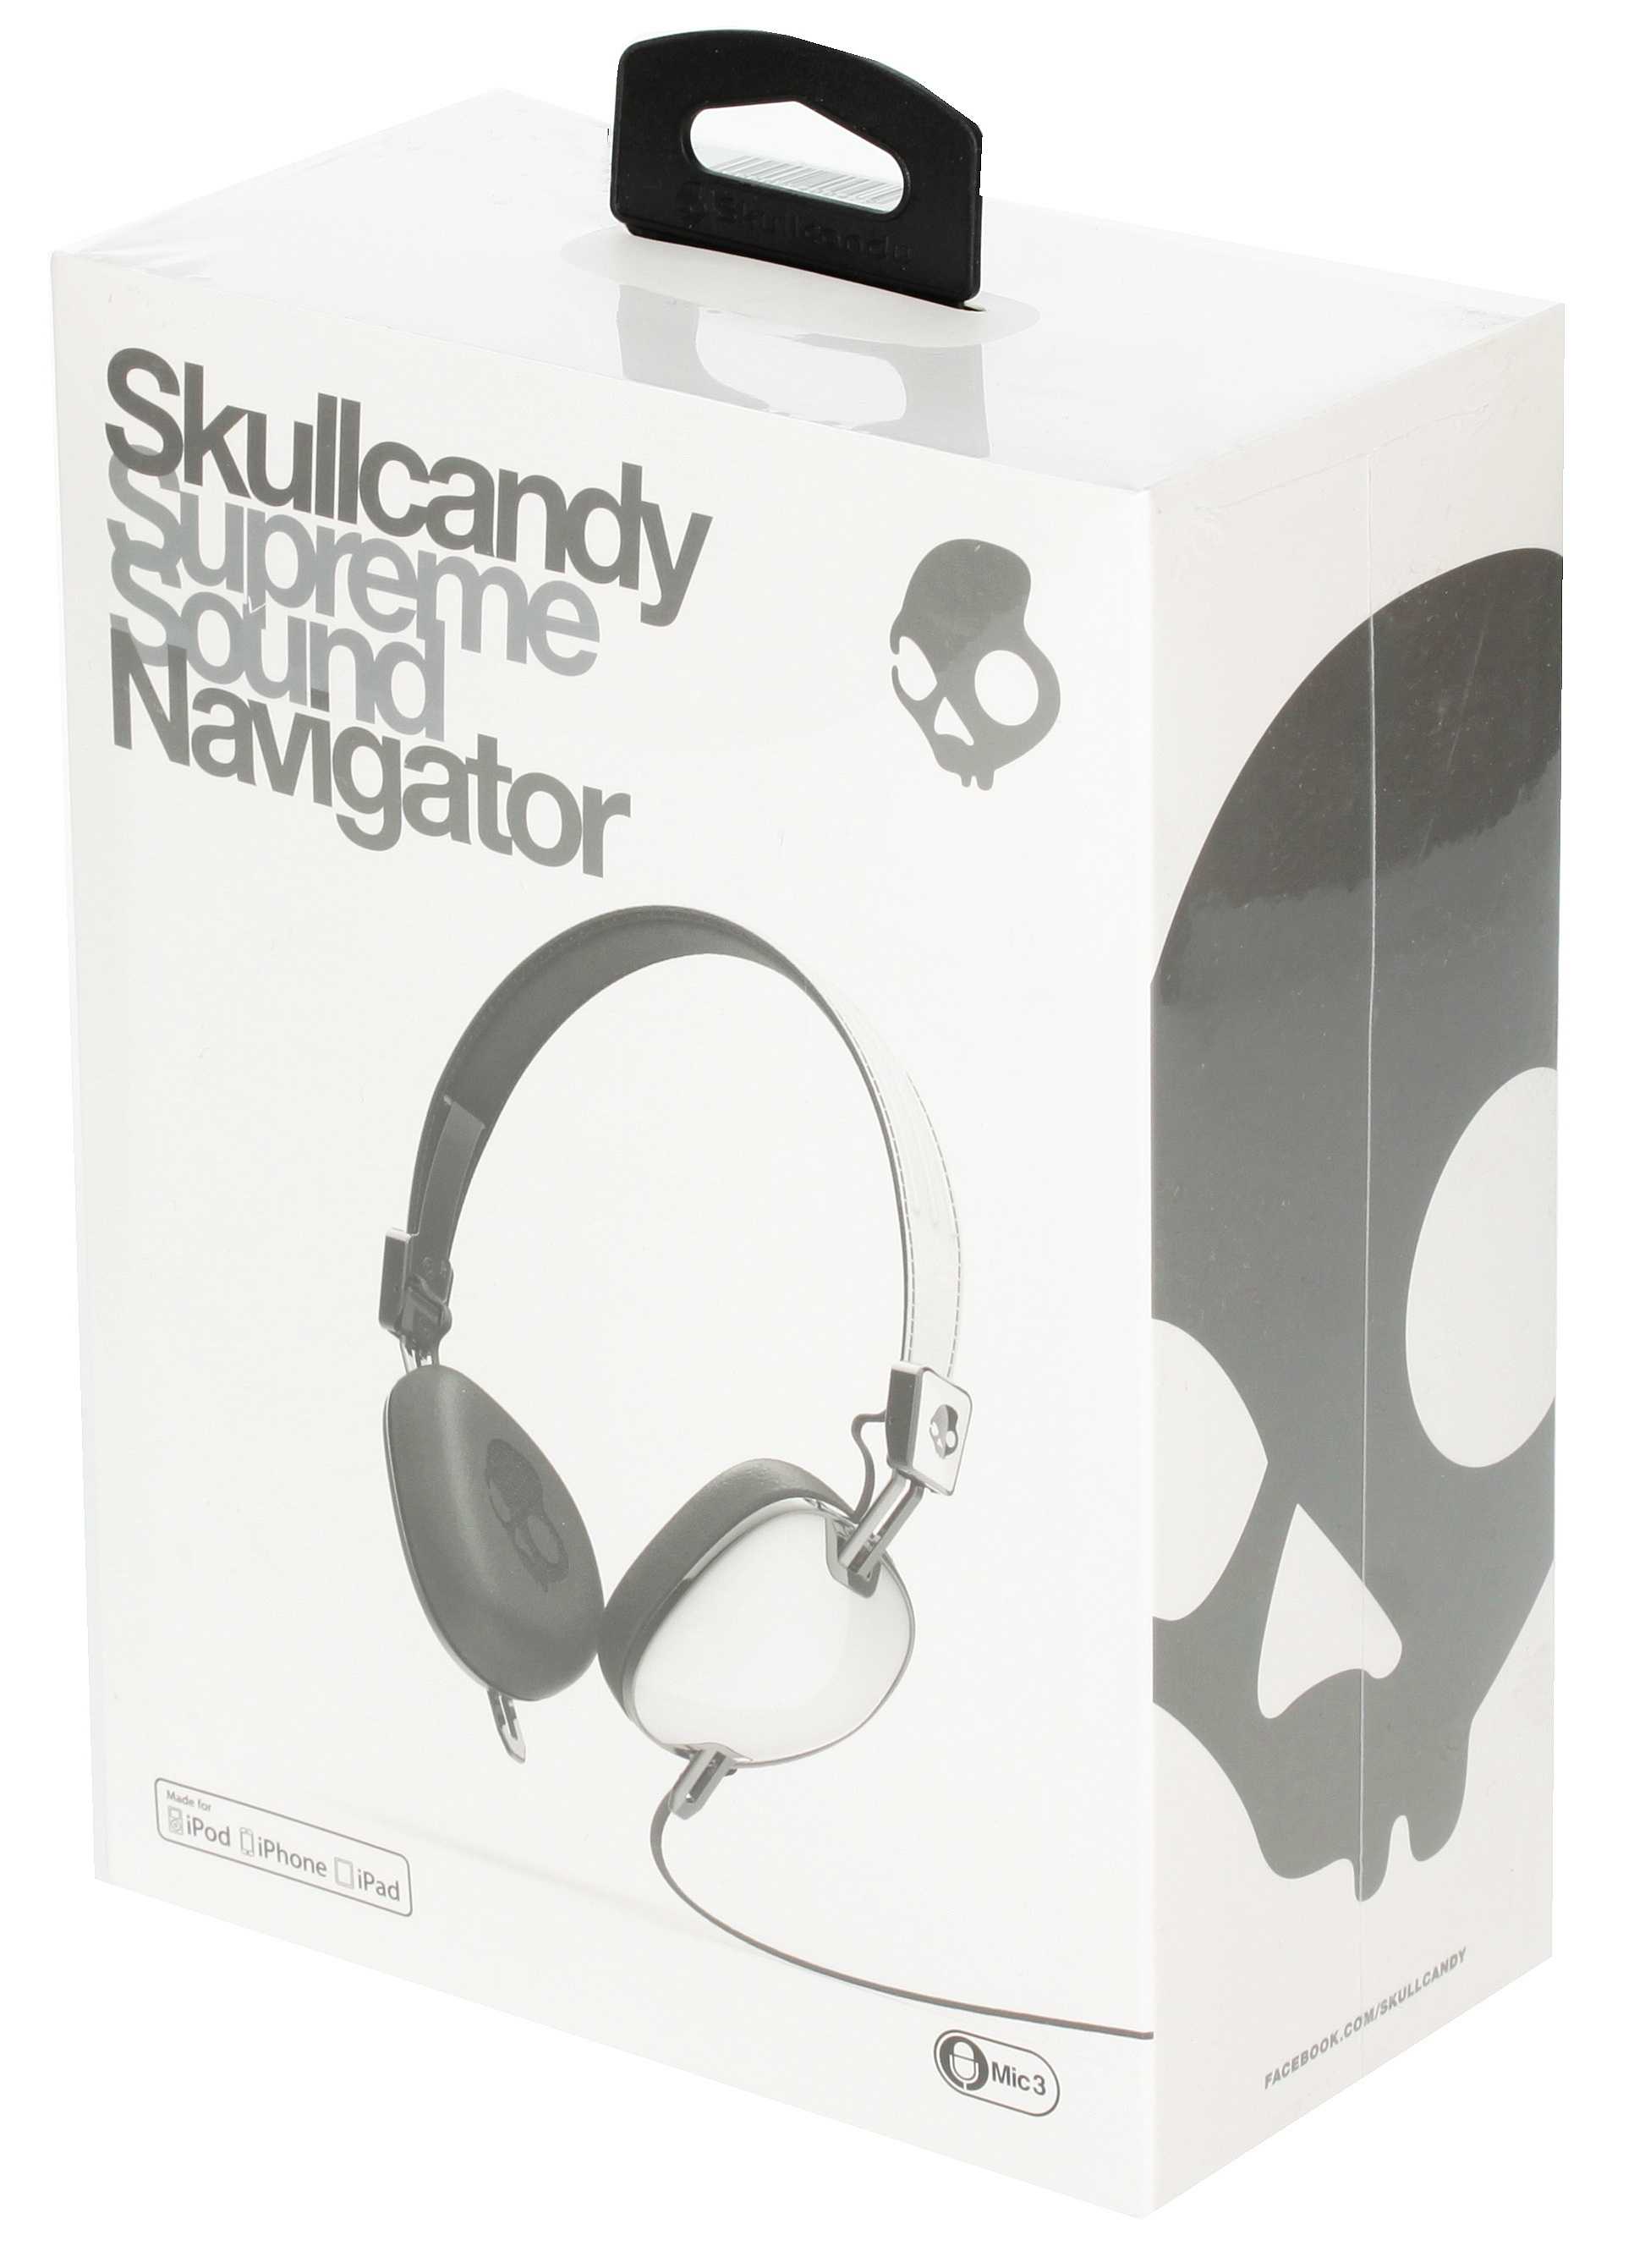 Skullcandy navigator - купить  в зеленоград, скидки, цена, отзывы, обзор, характеристики - bluetooth гарнитуры и наушники